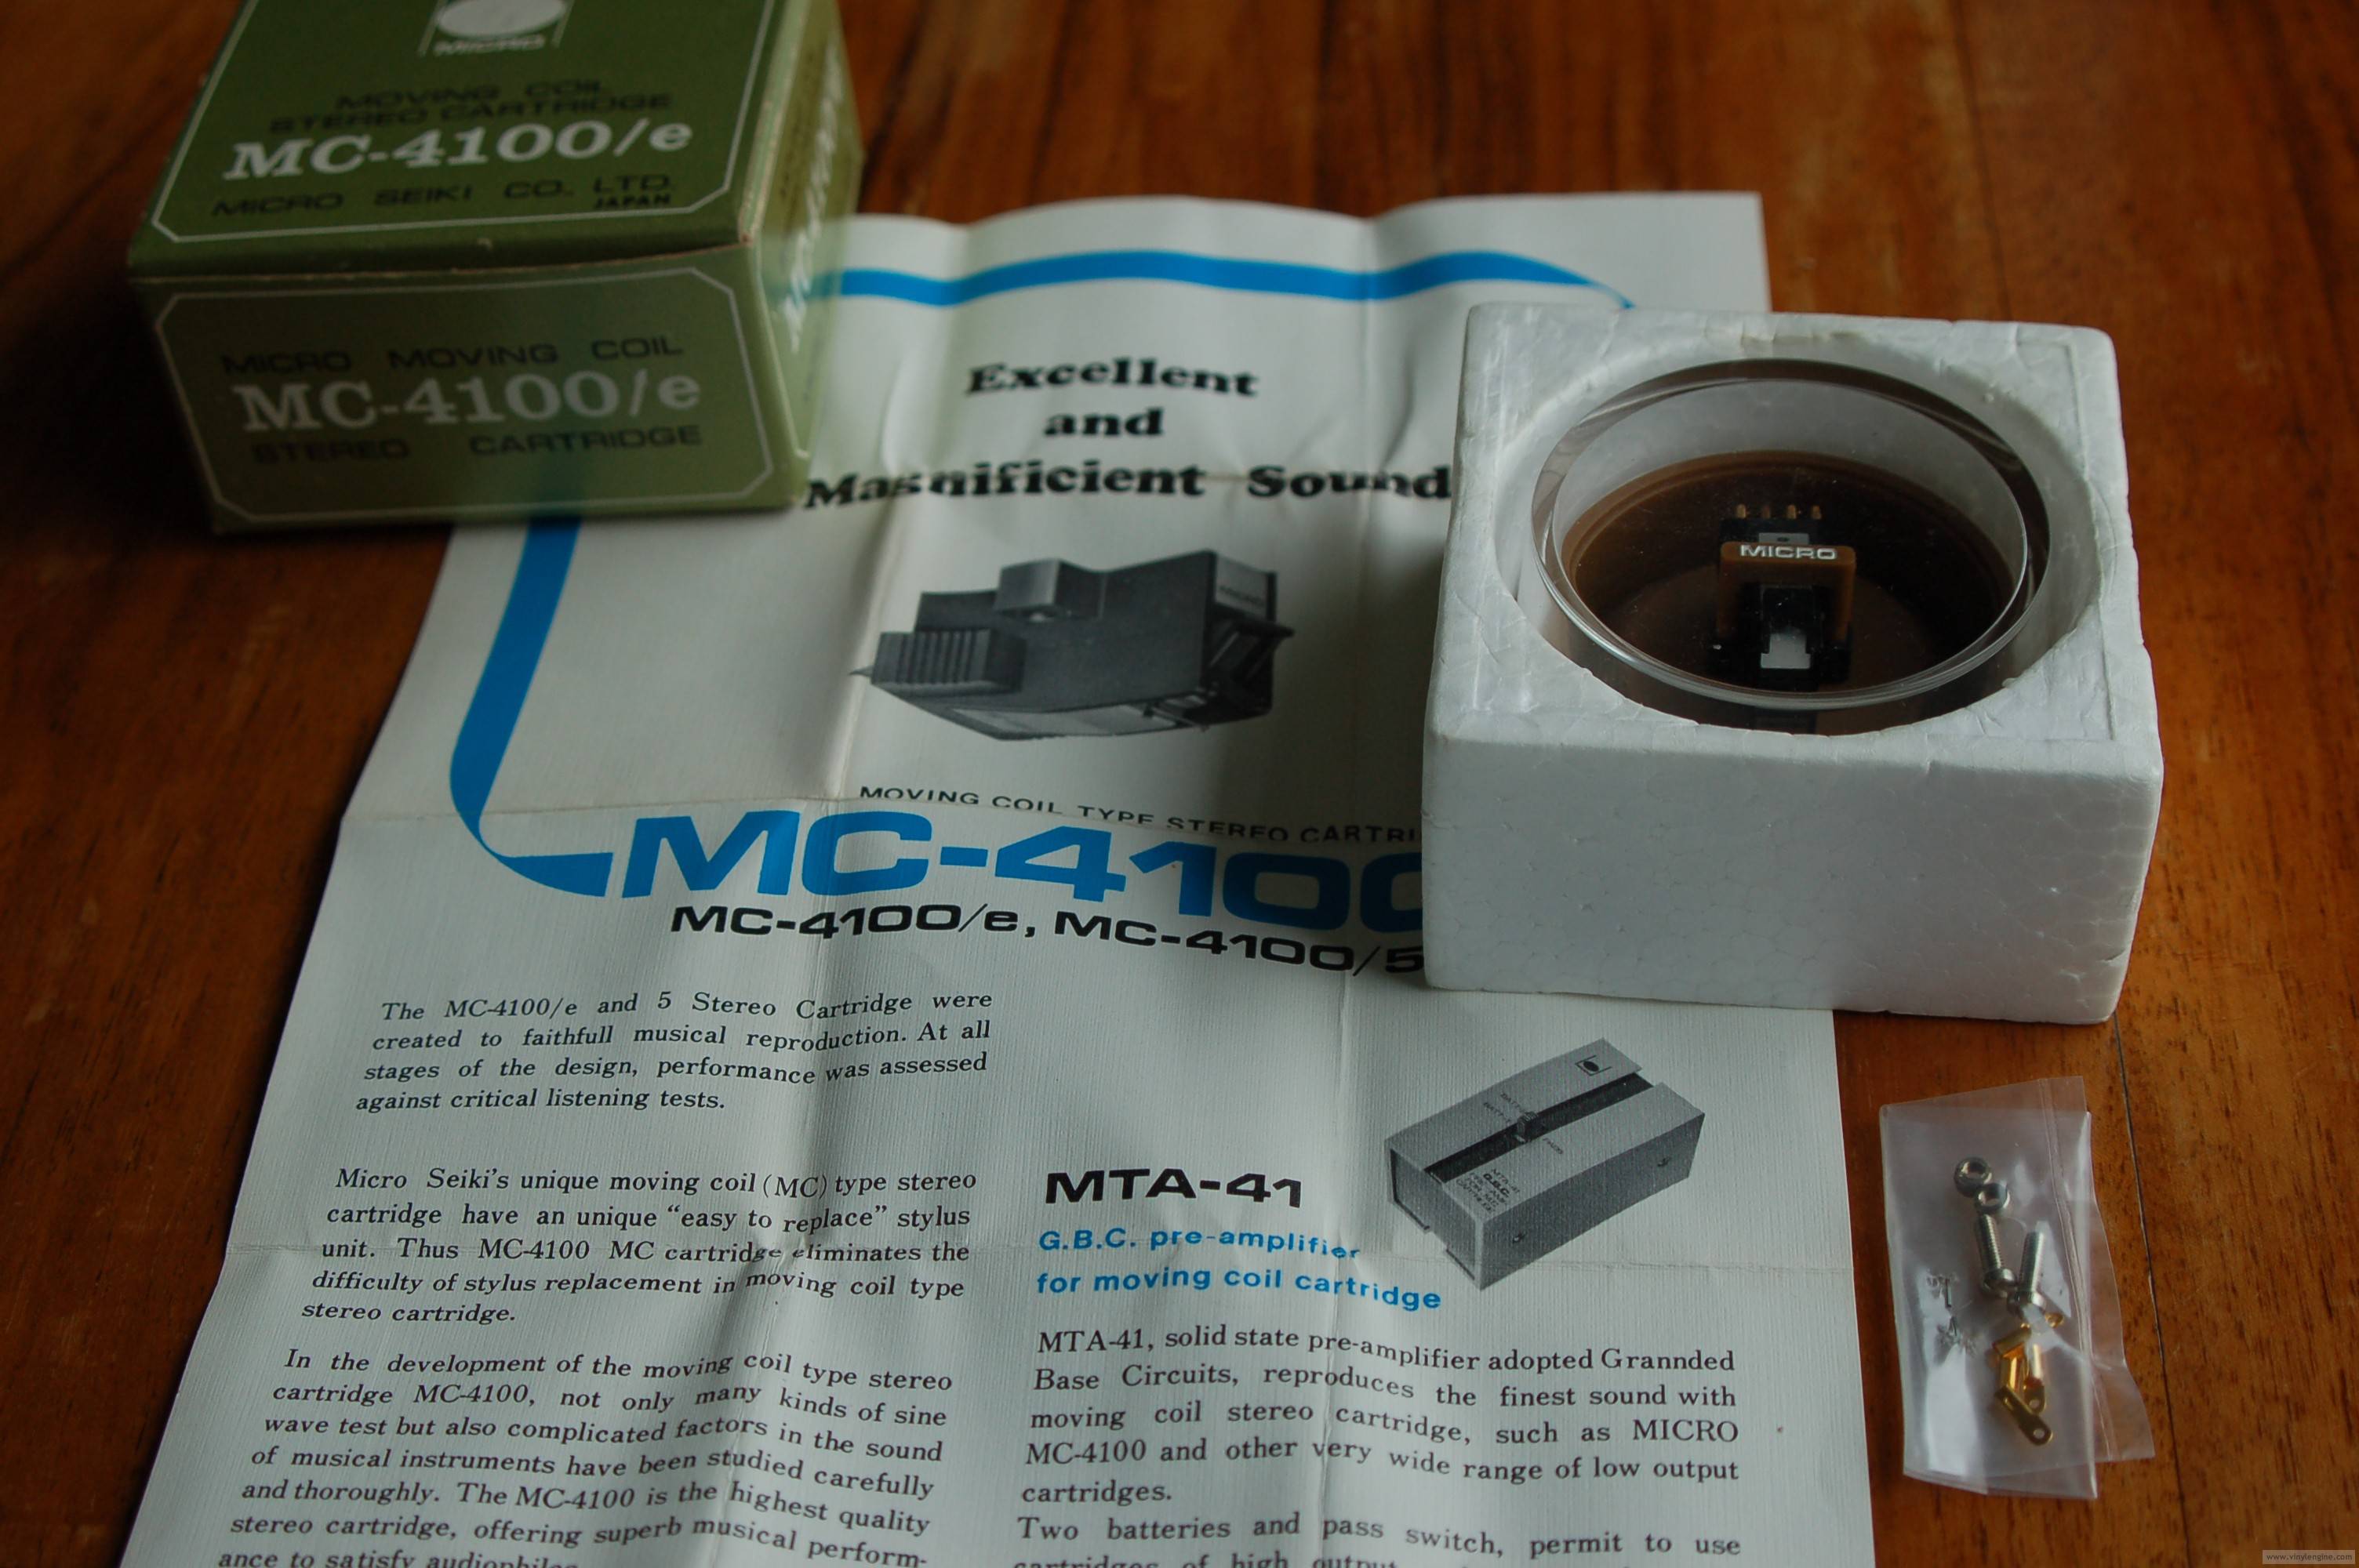 Micro Seiki MC-4100 E